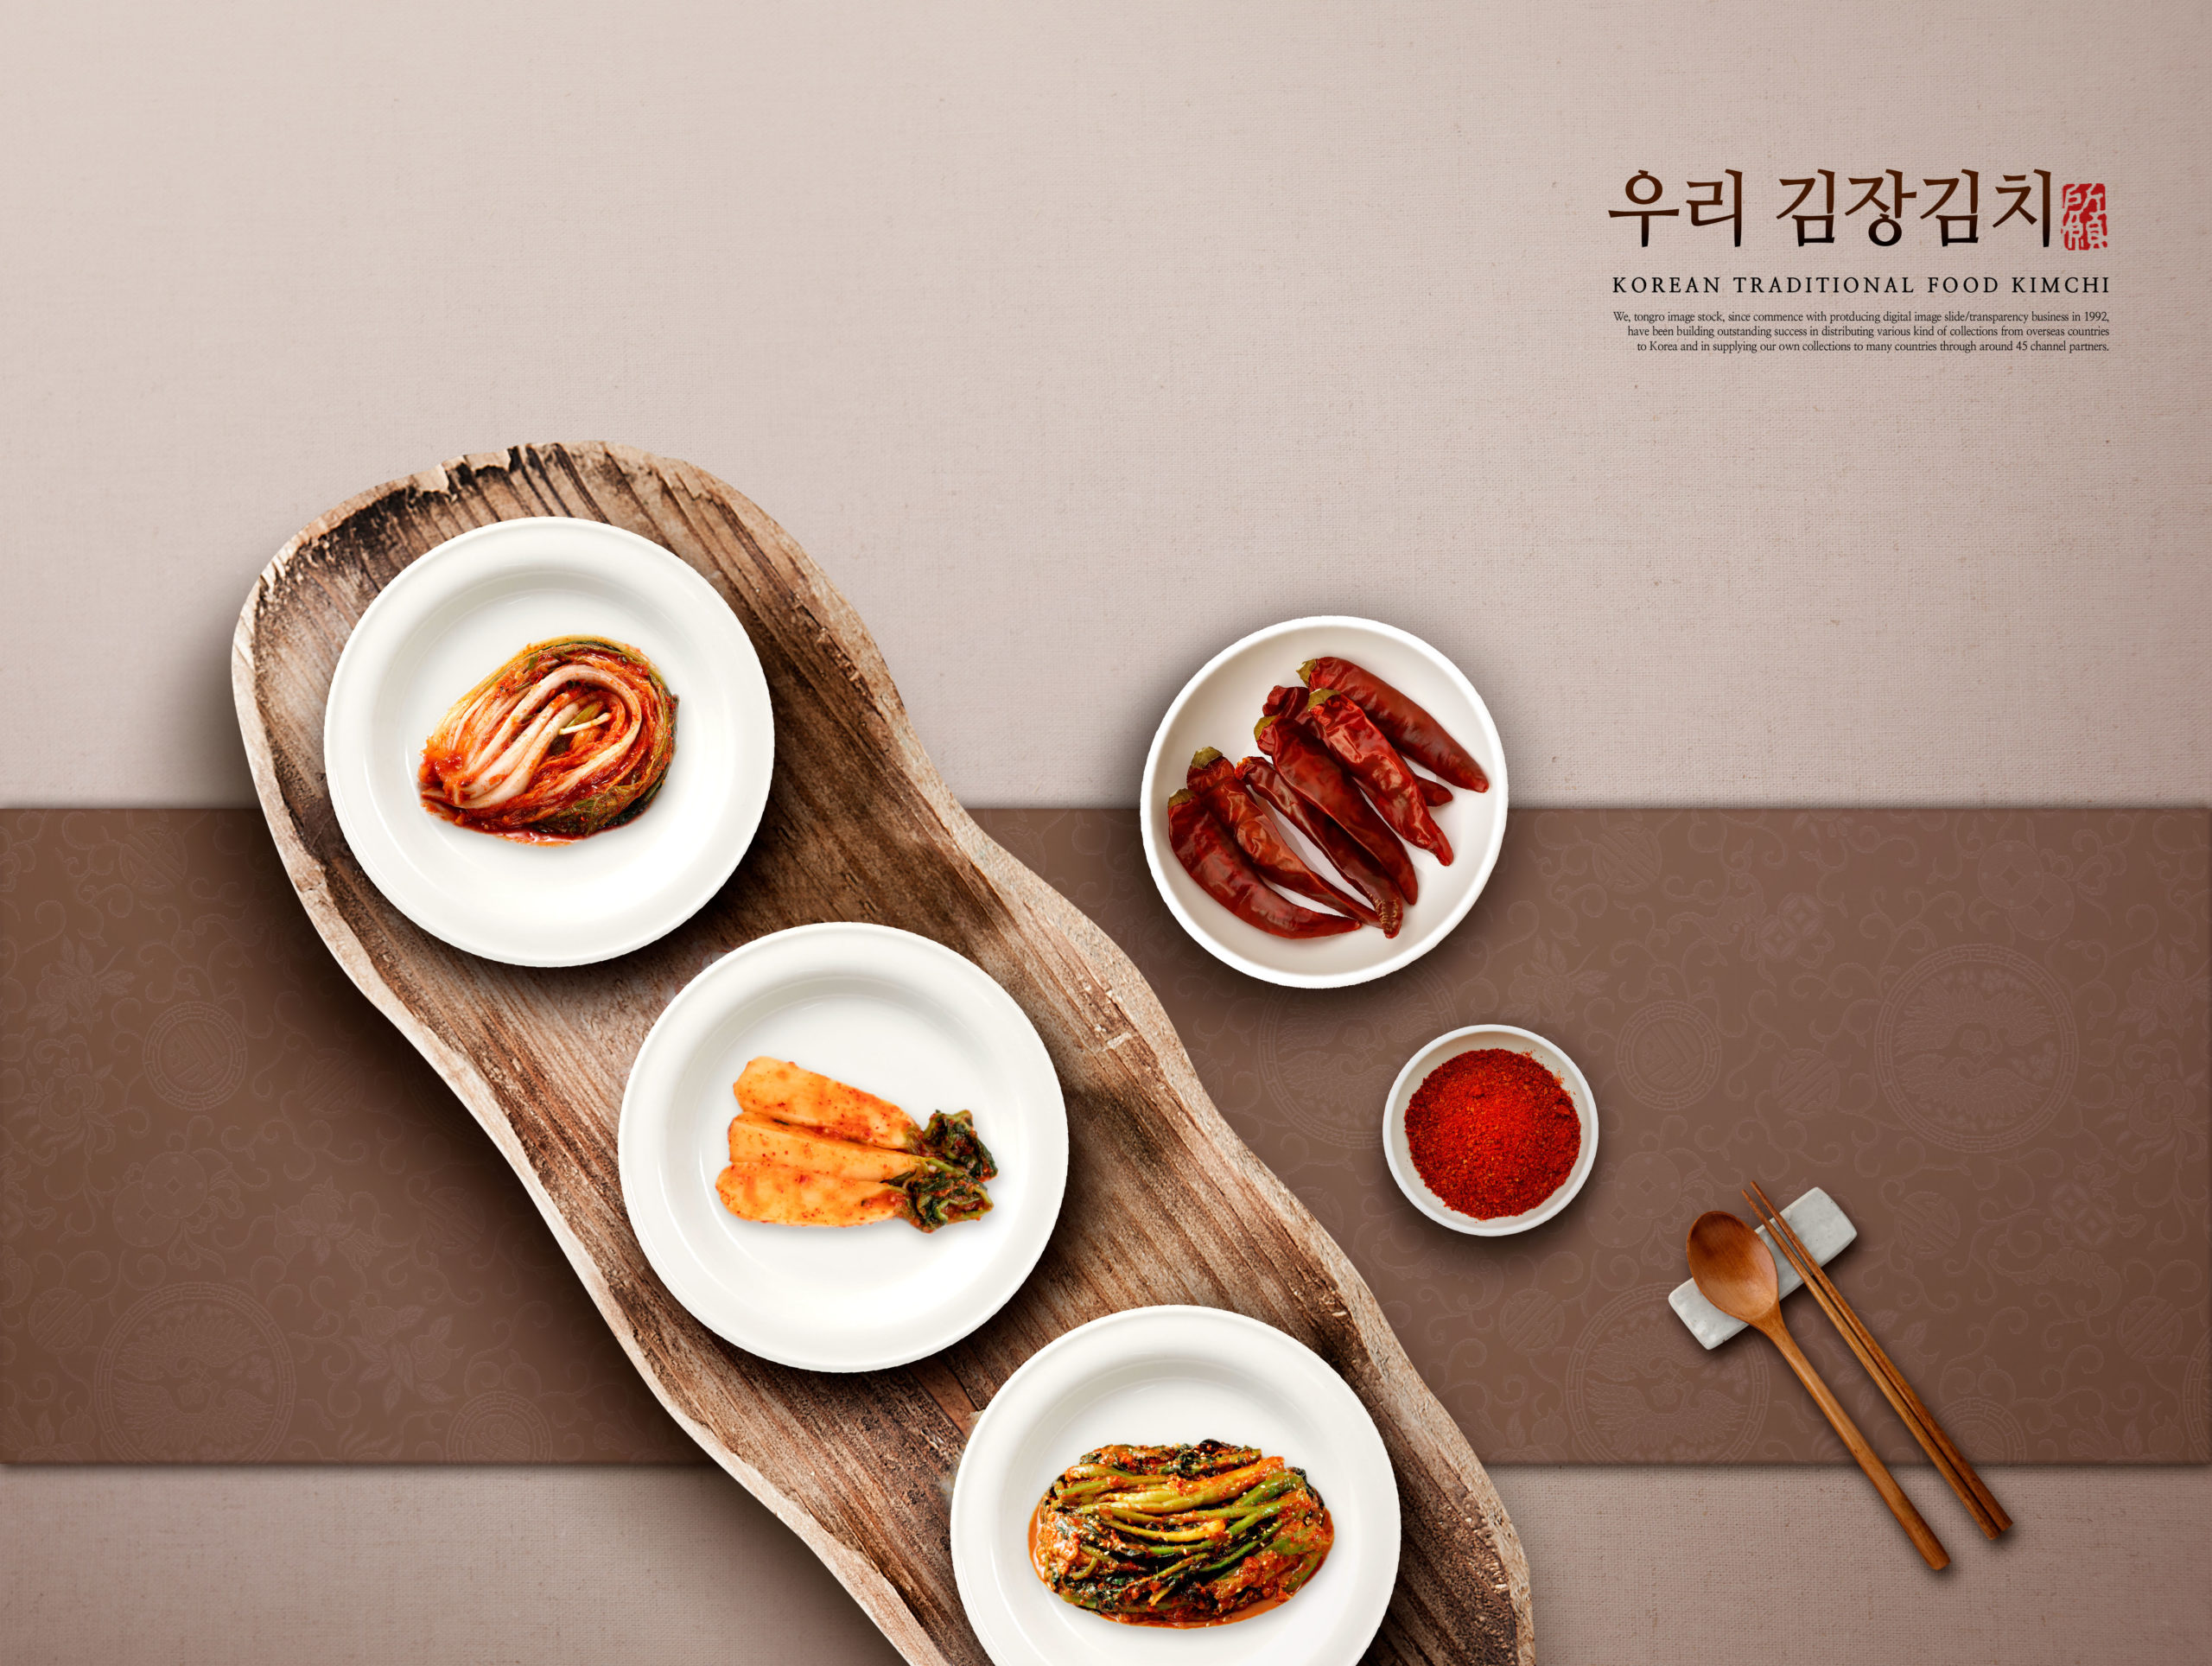 韩国传统泡菜食品宣传海报/菜单设计模板插图